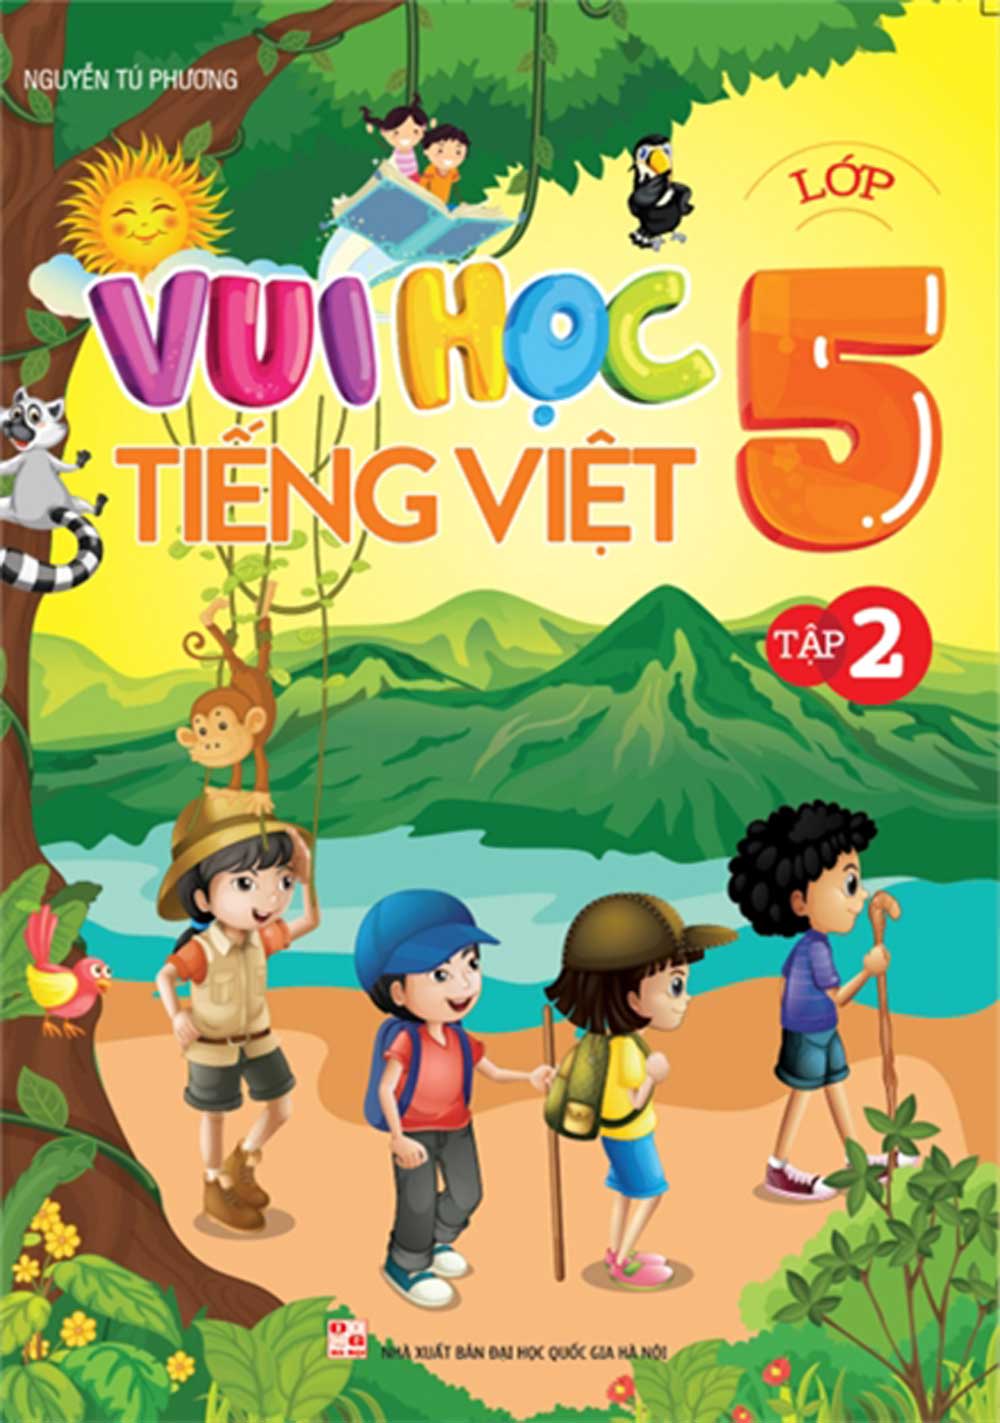 Vui Học Tiếng Việt Lớp 5 Tập 2 